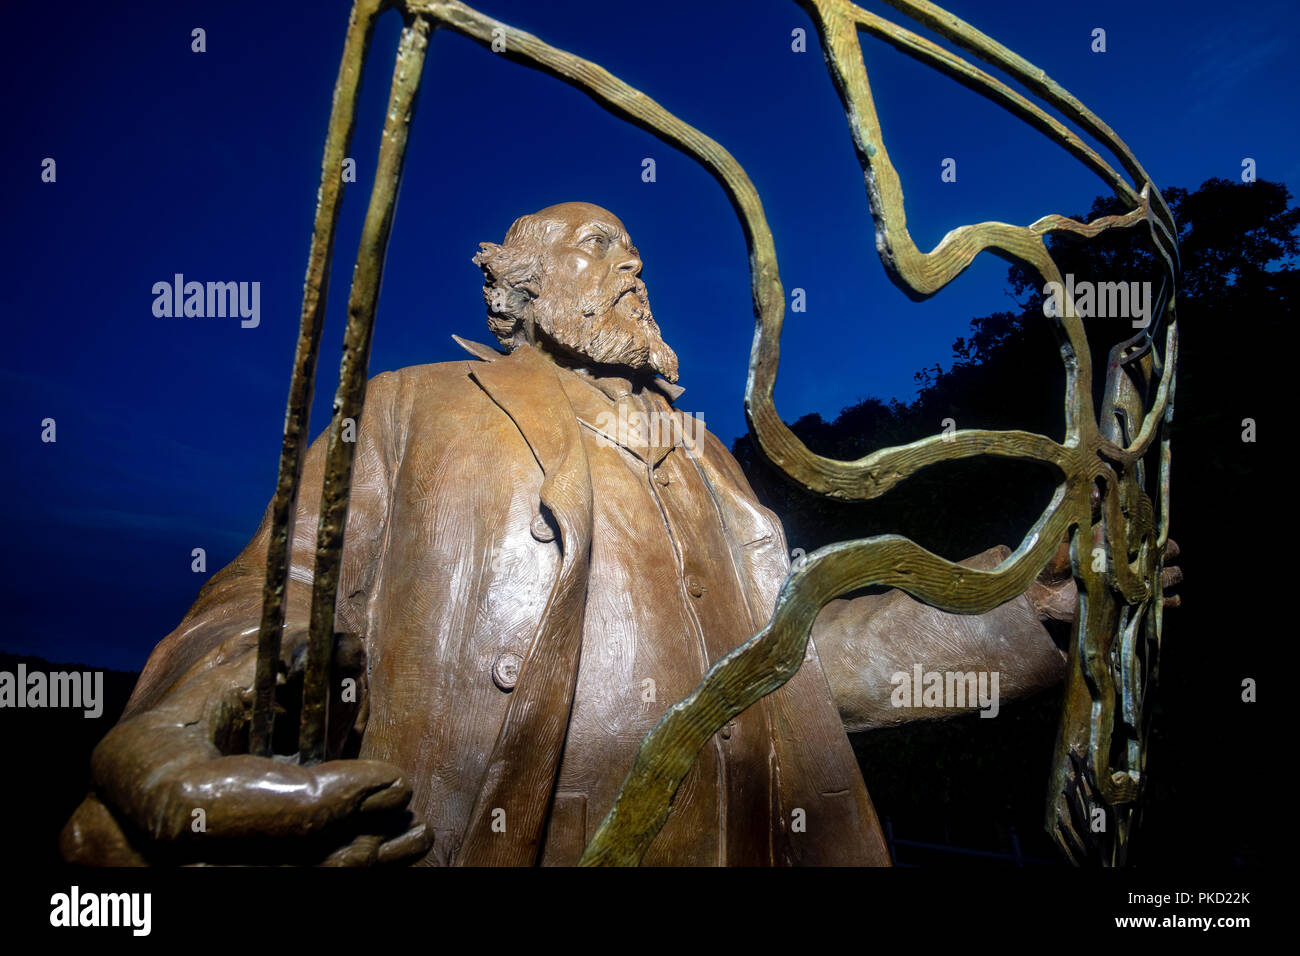 Frederick Ley Olmsted - Padre de paisaje americano arquitectura - estatua en bronce por el artista Zenos Frudakis - Arboretum, Carolina del Norte en Asheville, Nort Foto de stock